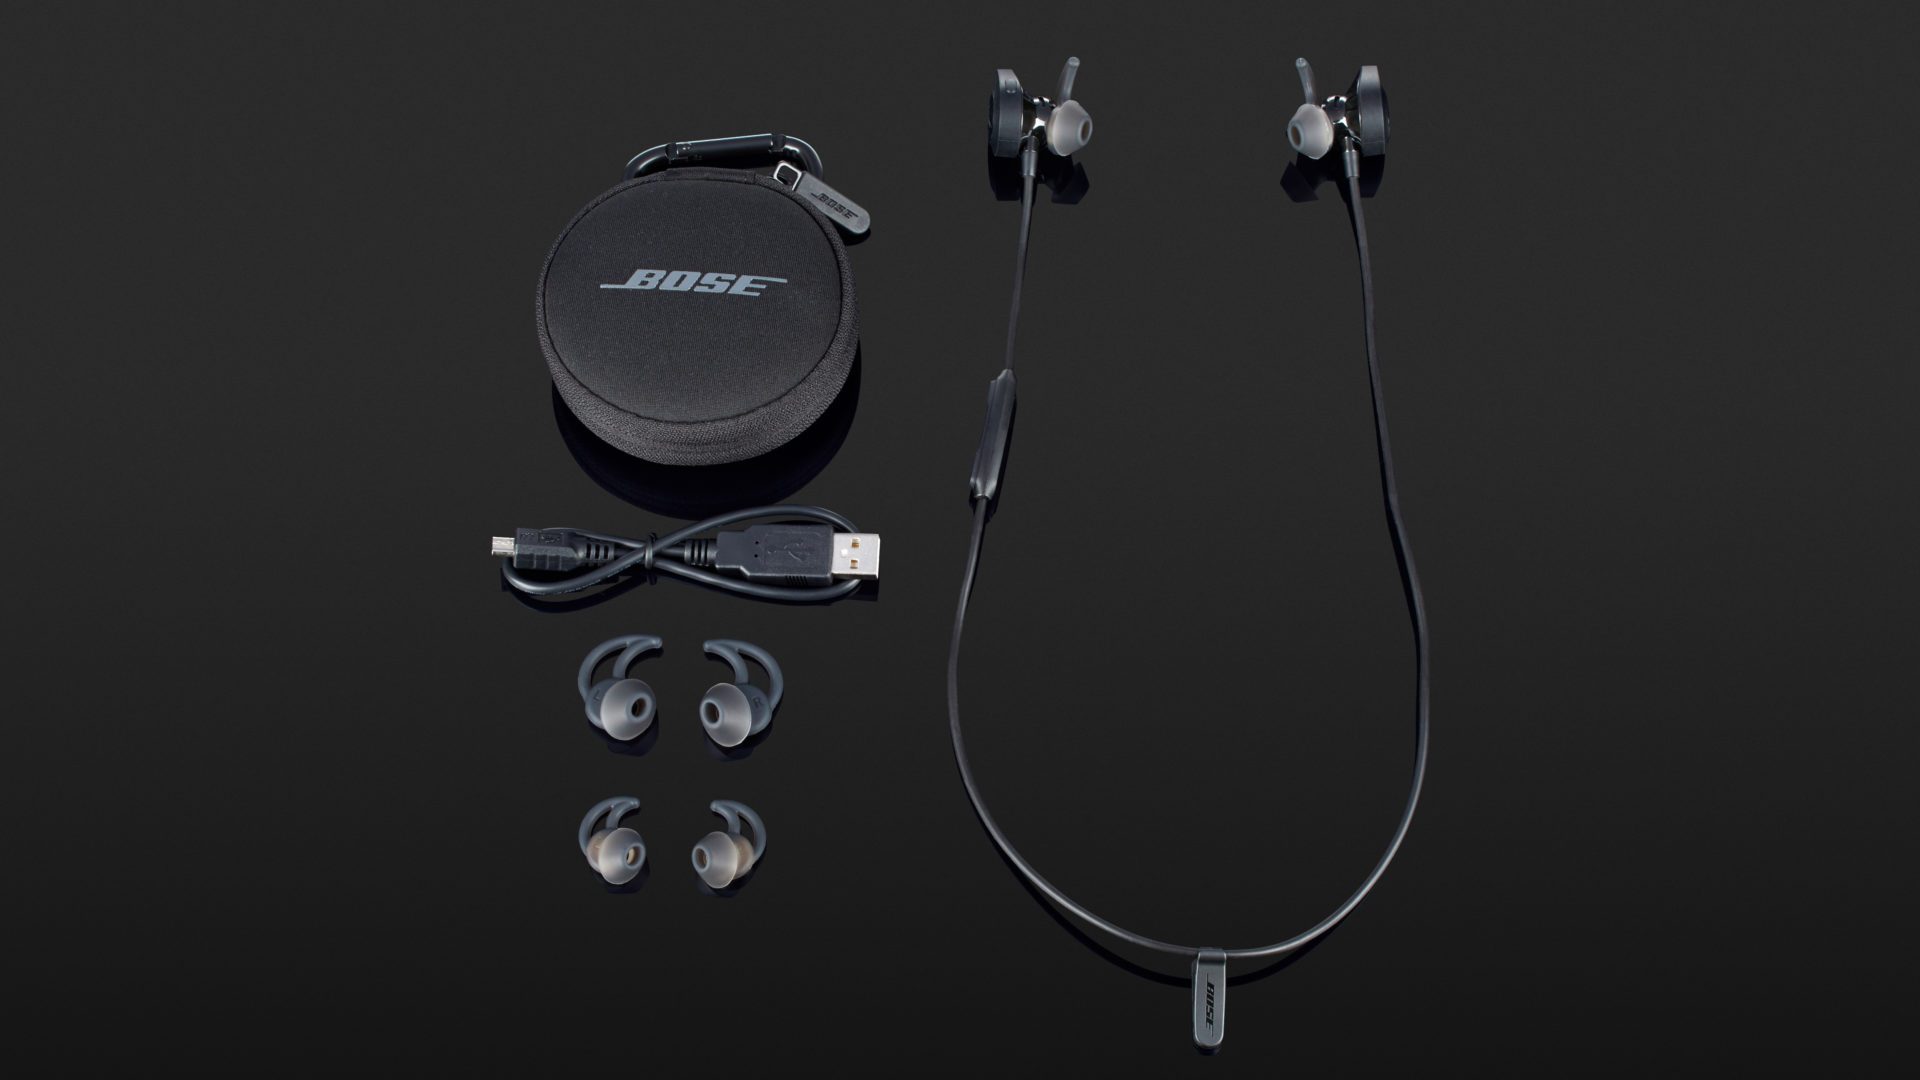 Bose Black Soundsport Wireless In-Ear Headphones